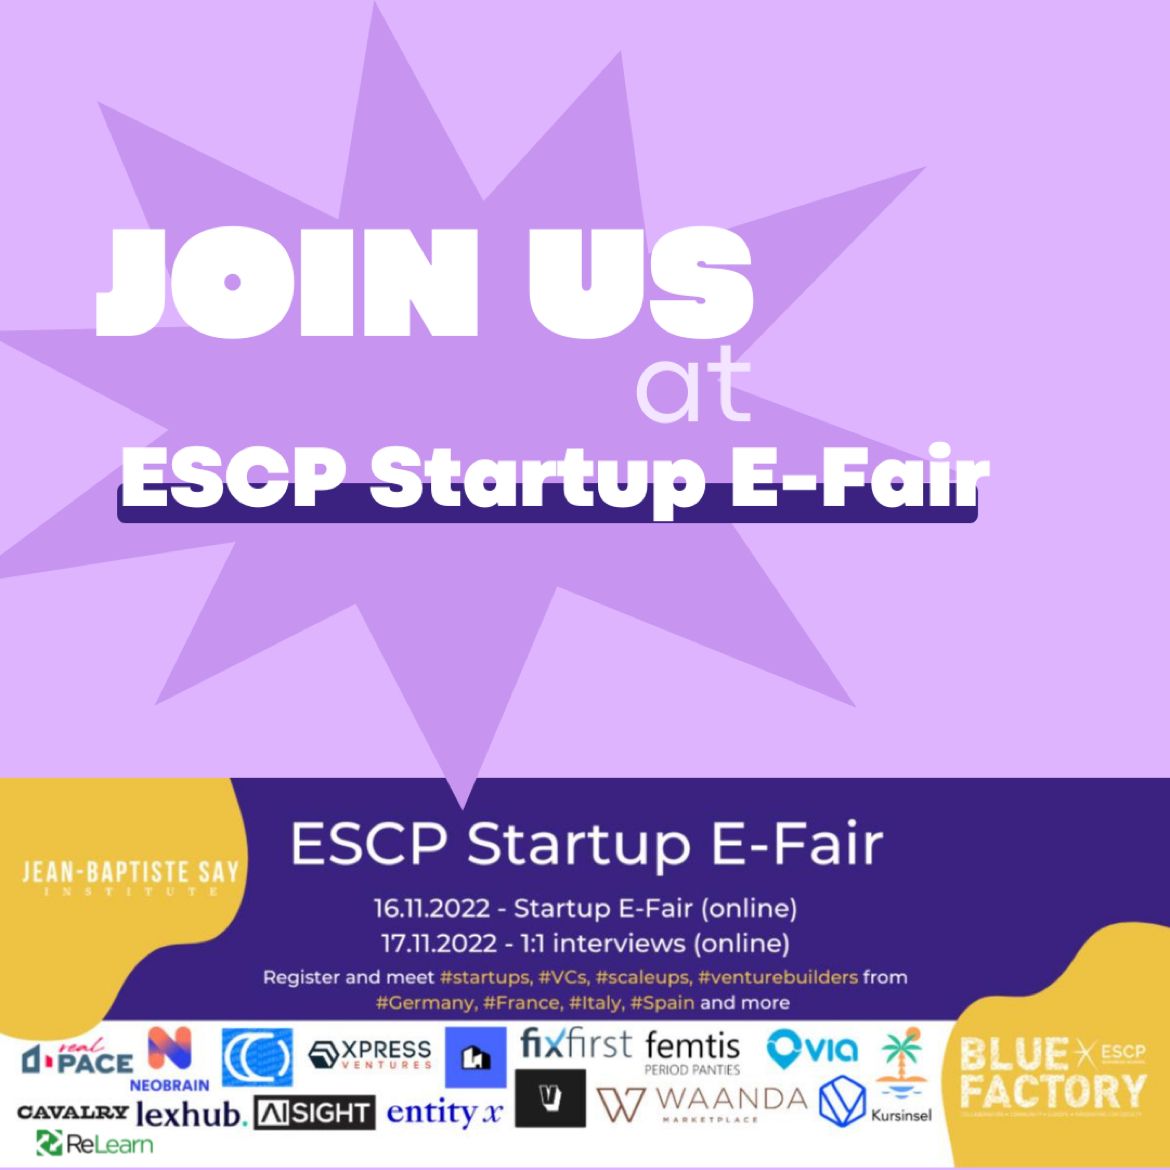 ESCP Startup E-Fair